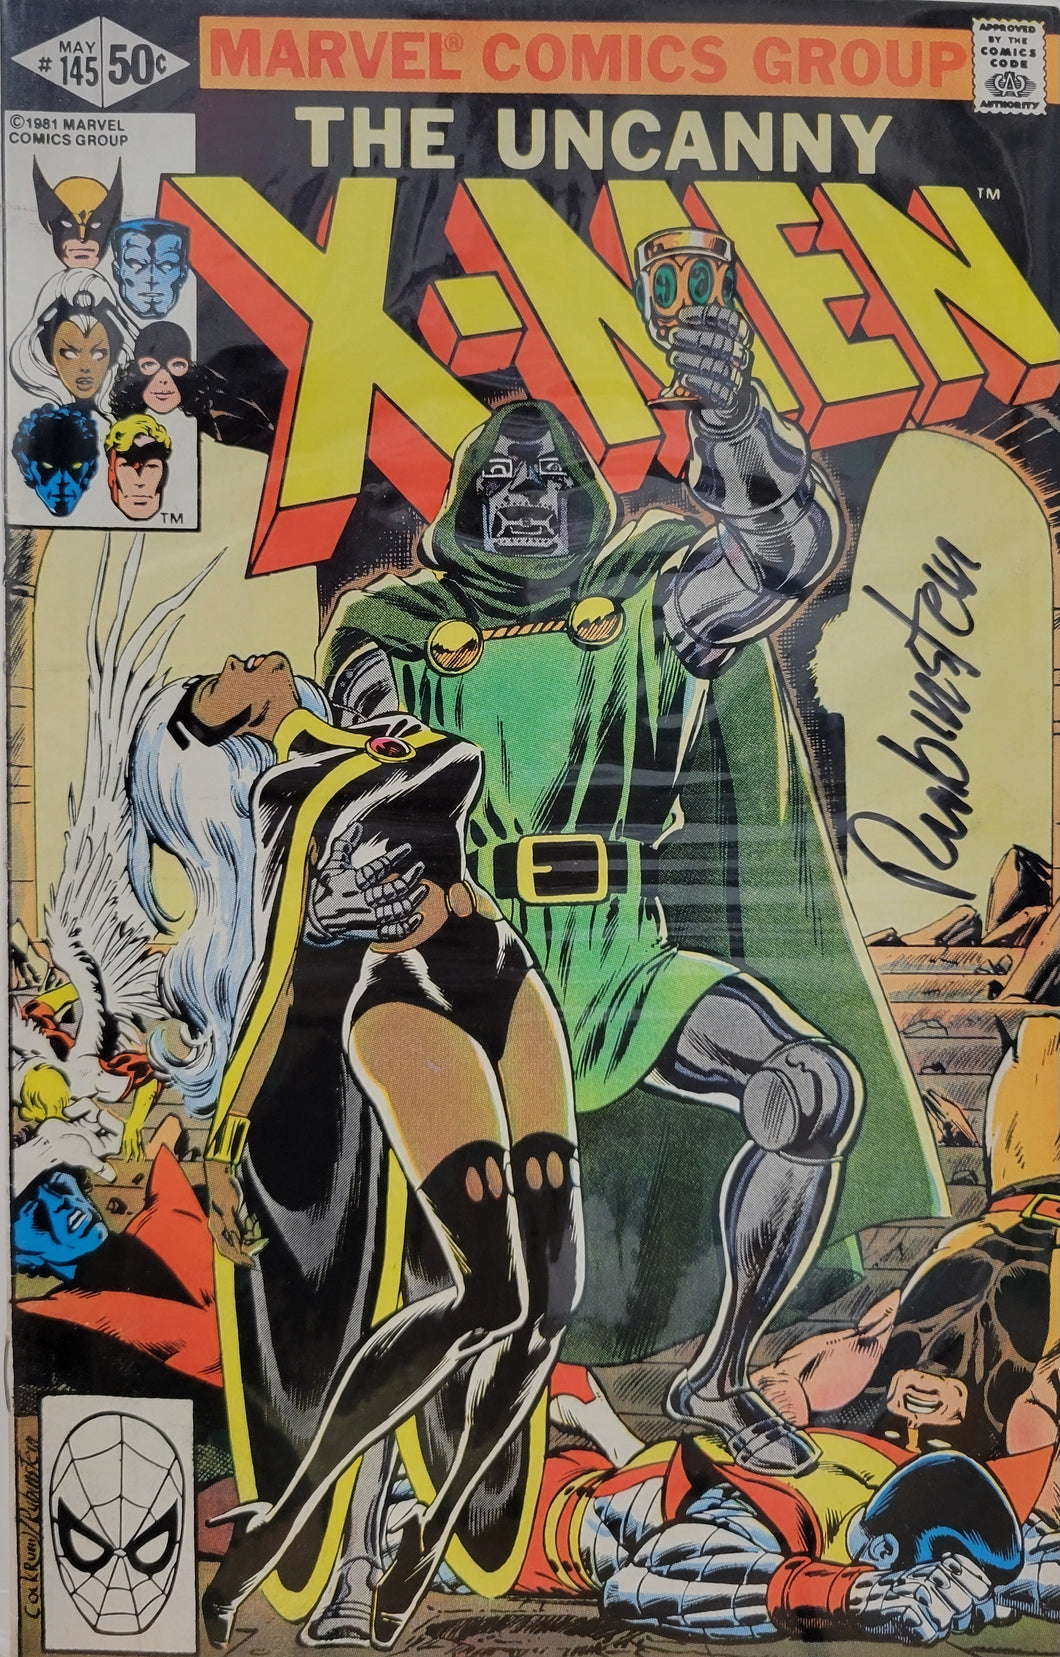 Uncanny X-Men #145 Signed by Joe Rubinstein w/COA